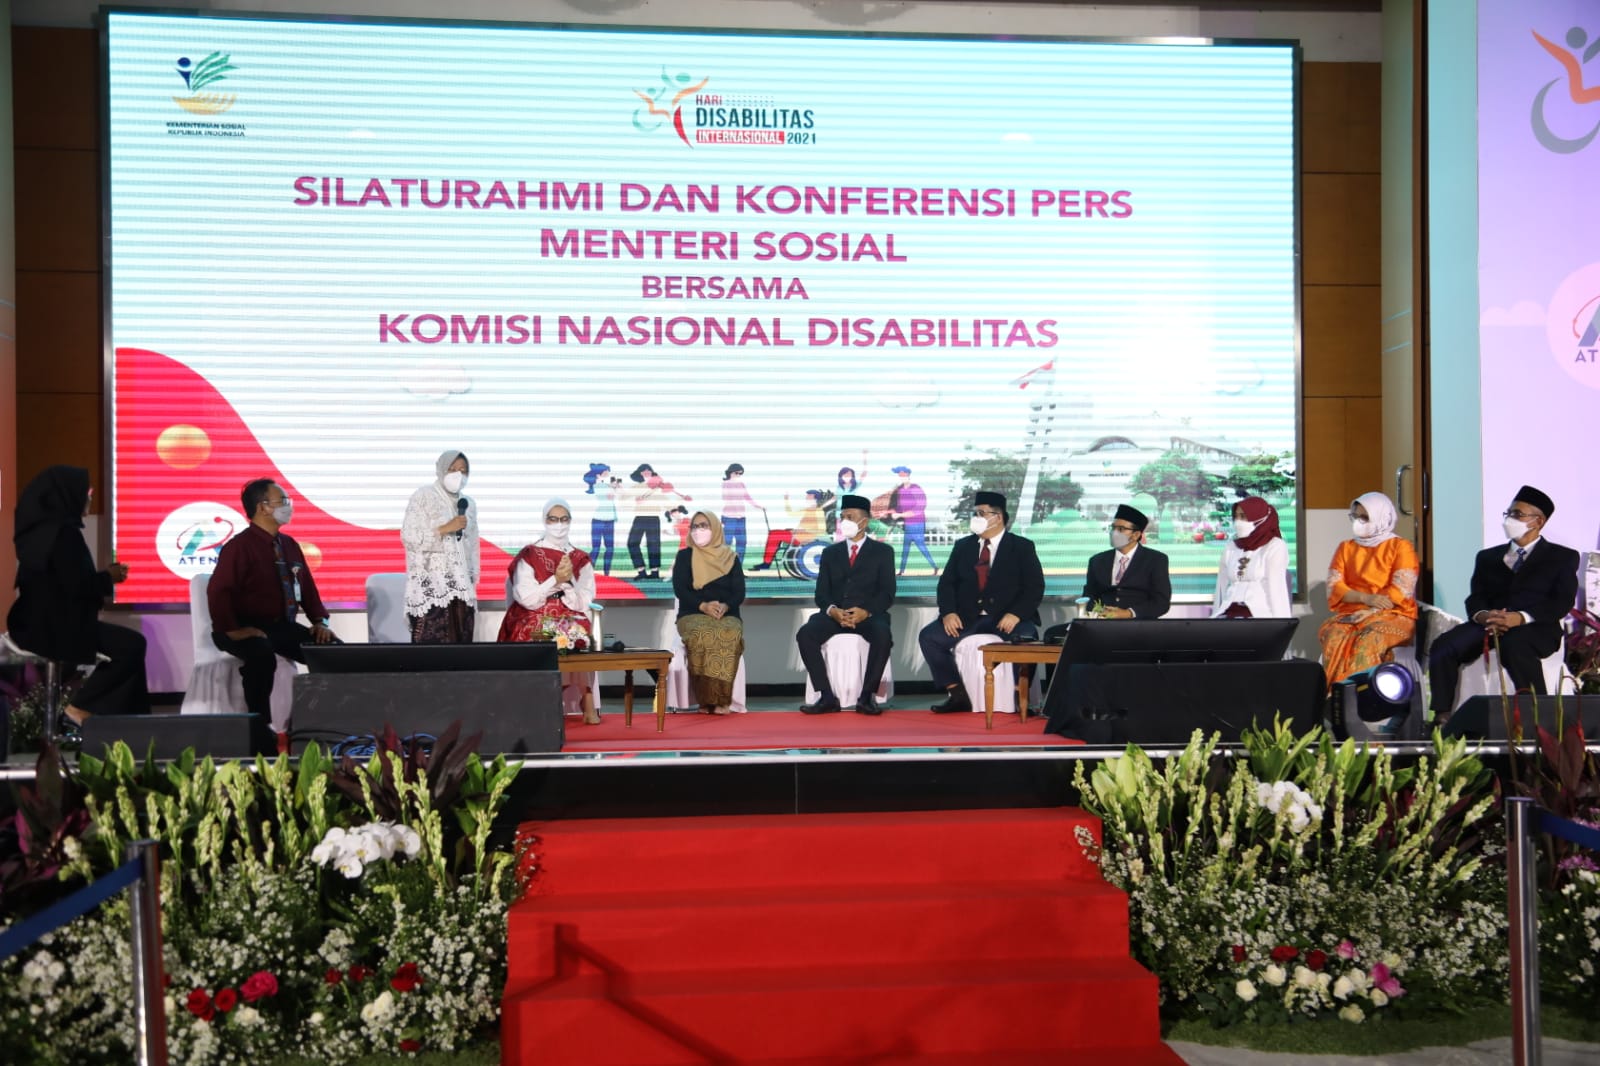 Pelantikan KND Bukti Nyata Komitmen Pemerintah Penuhi Hak Penyandang Disabilitas